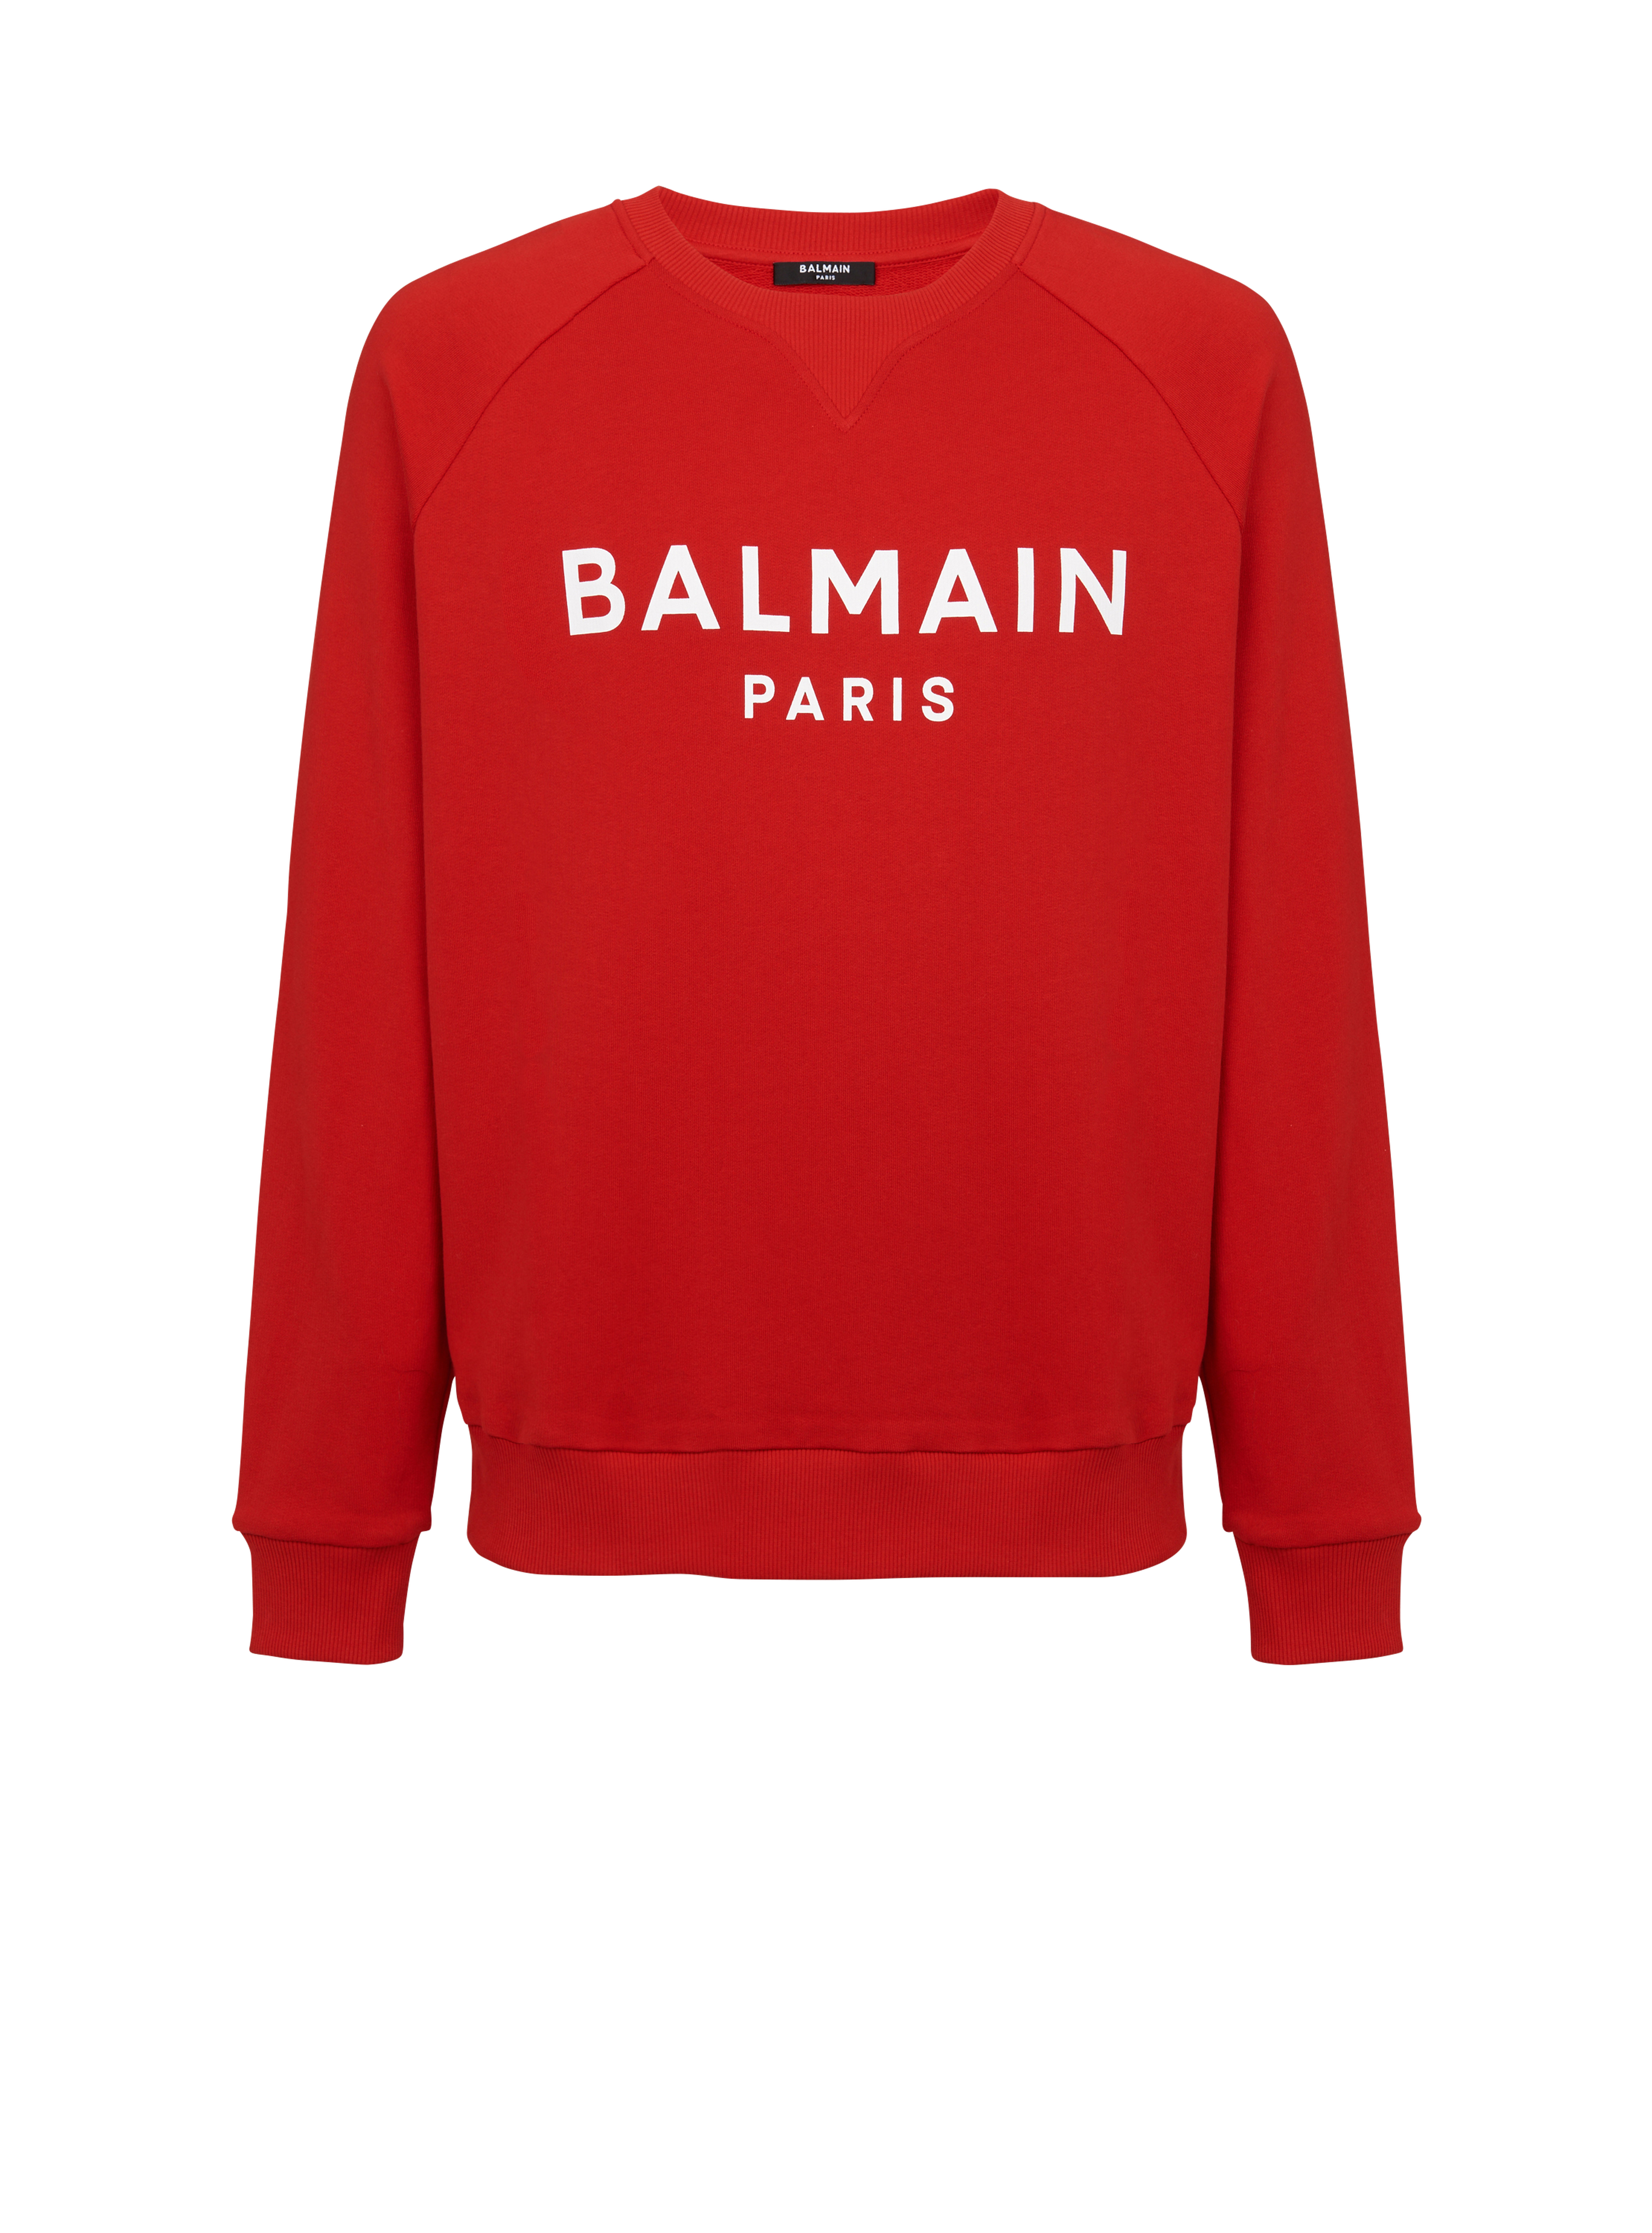 Cotton sweatshirt with flocked Balmain Paris logo, red